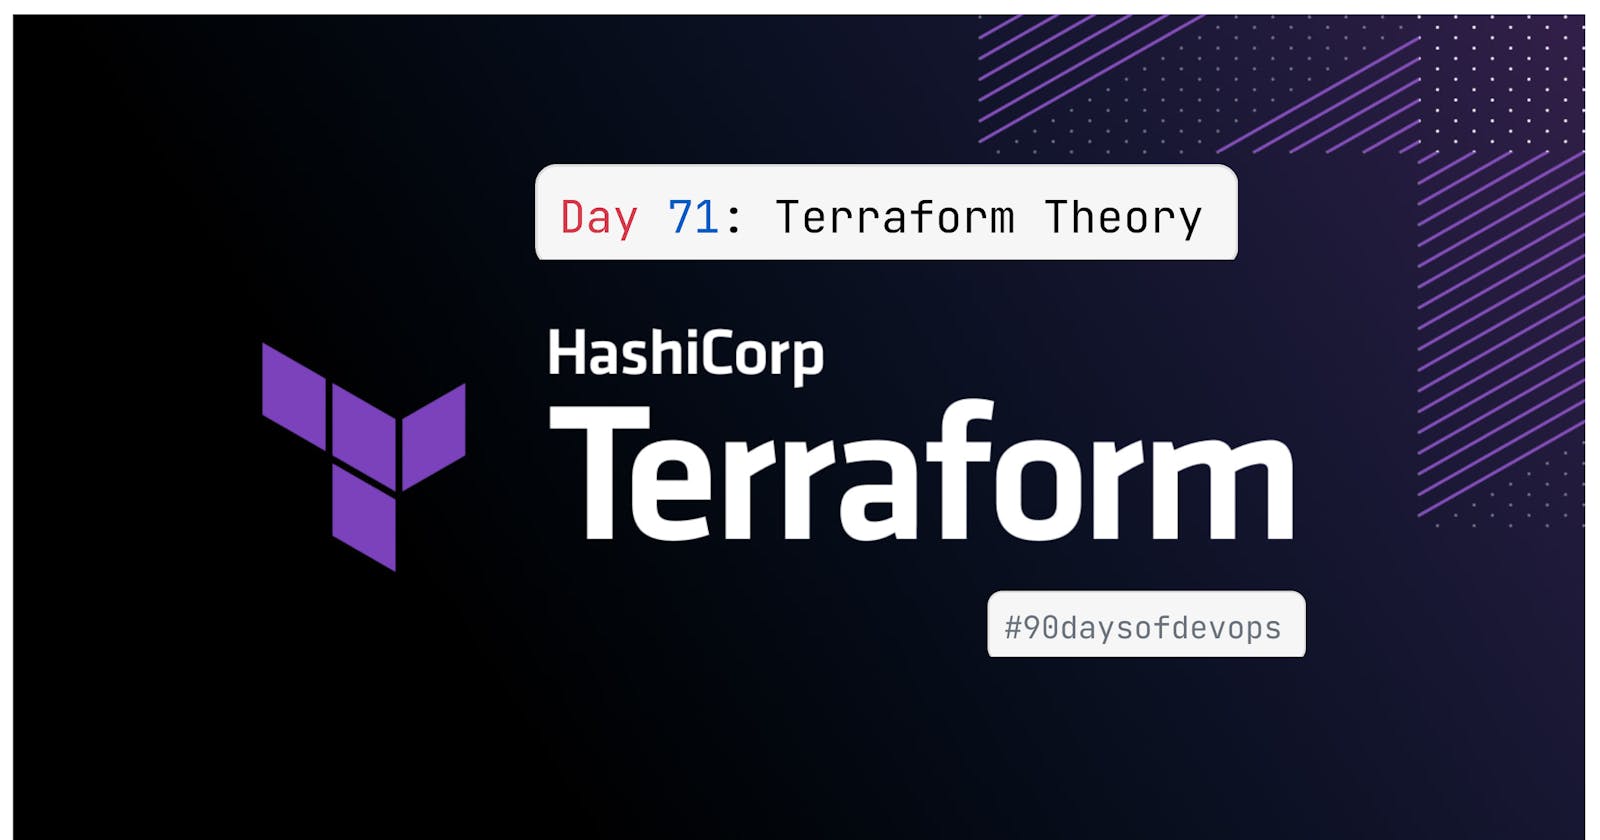 Day 71: Terraform Theory.